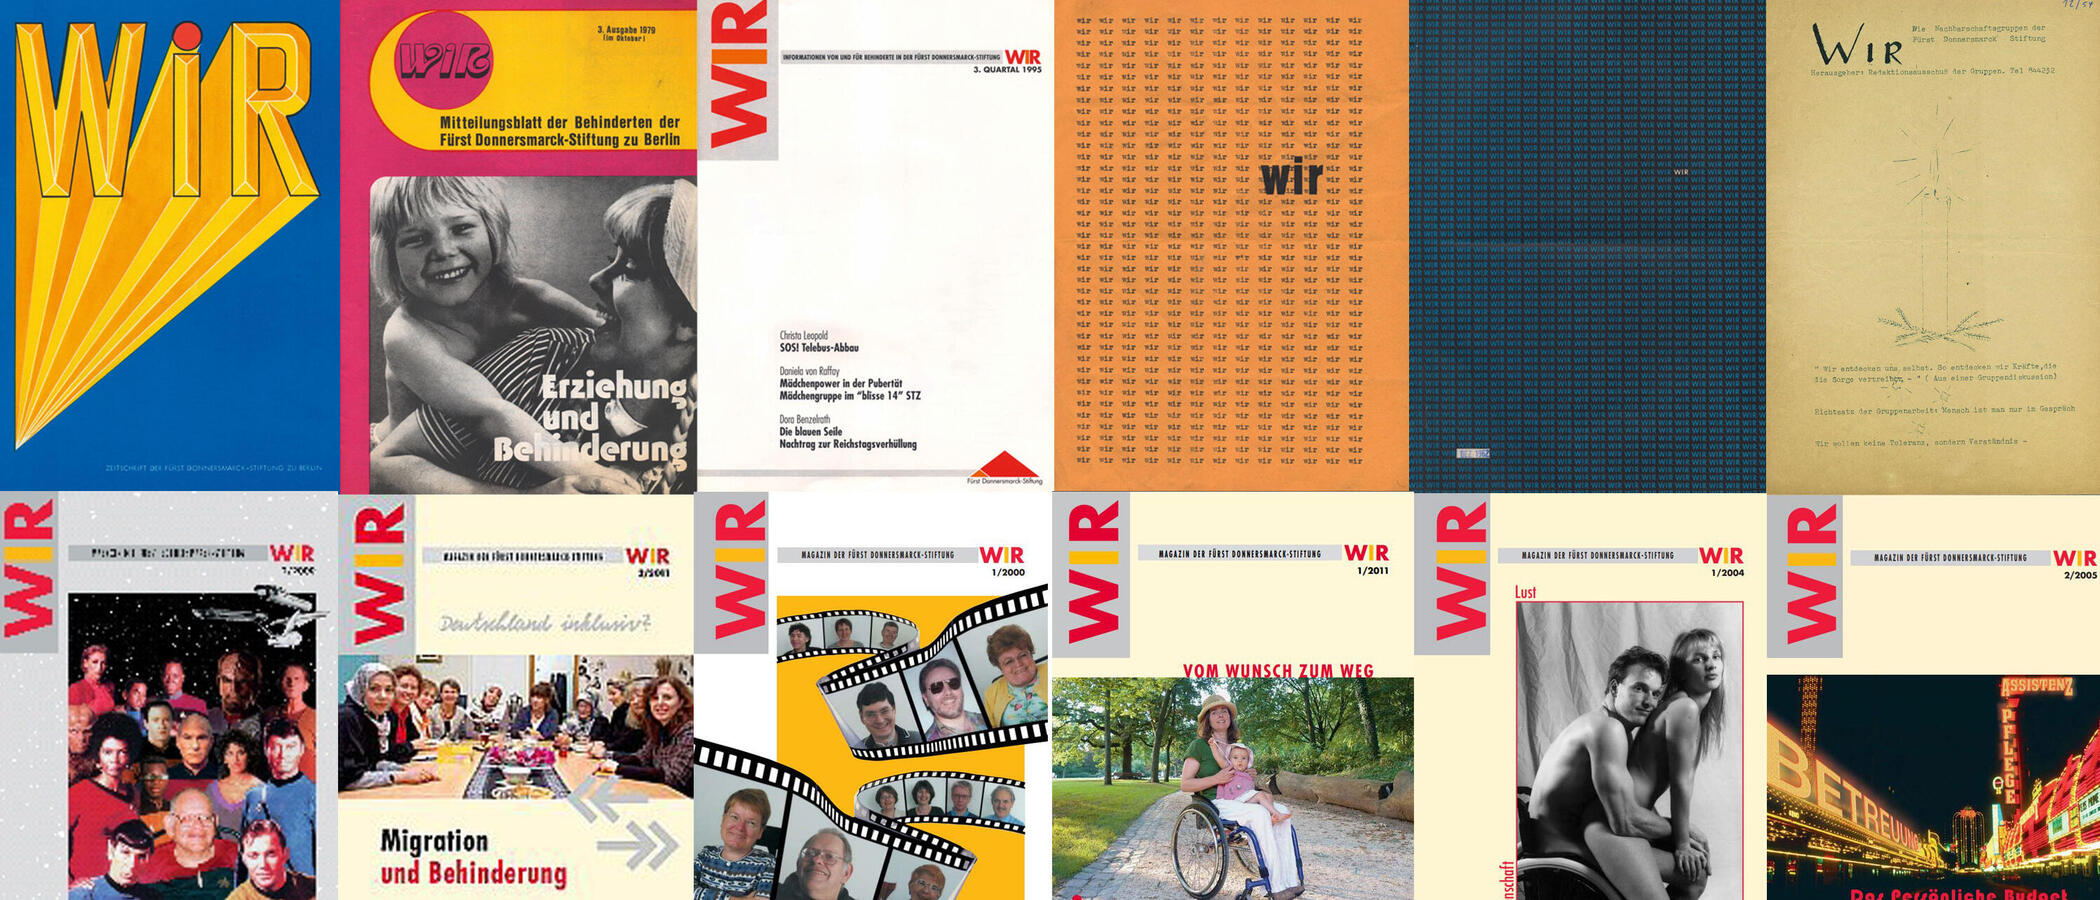 Eine Collage mit unterschiedlichen WIR-Titelbildern aus über 60 Jahren.